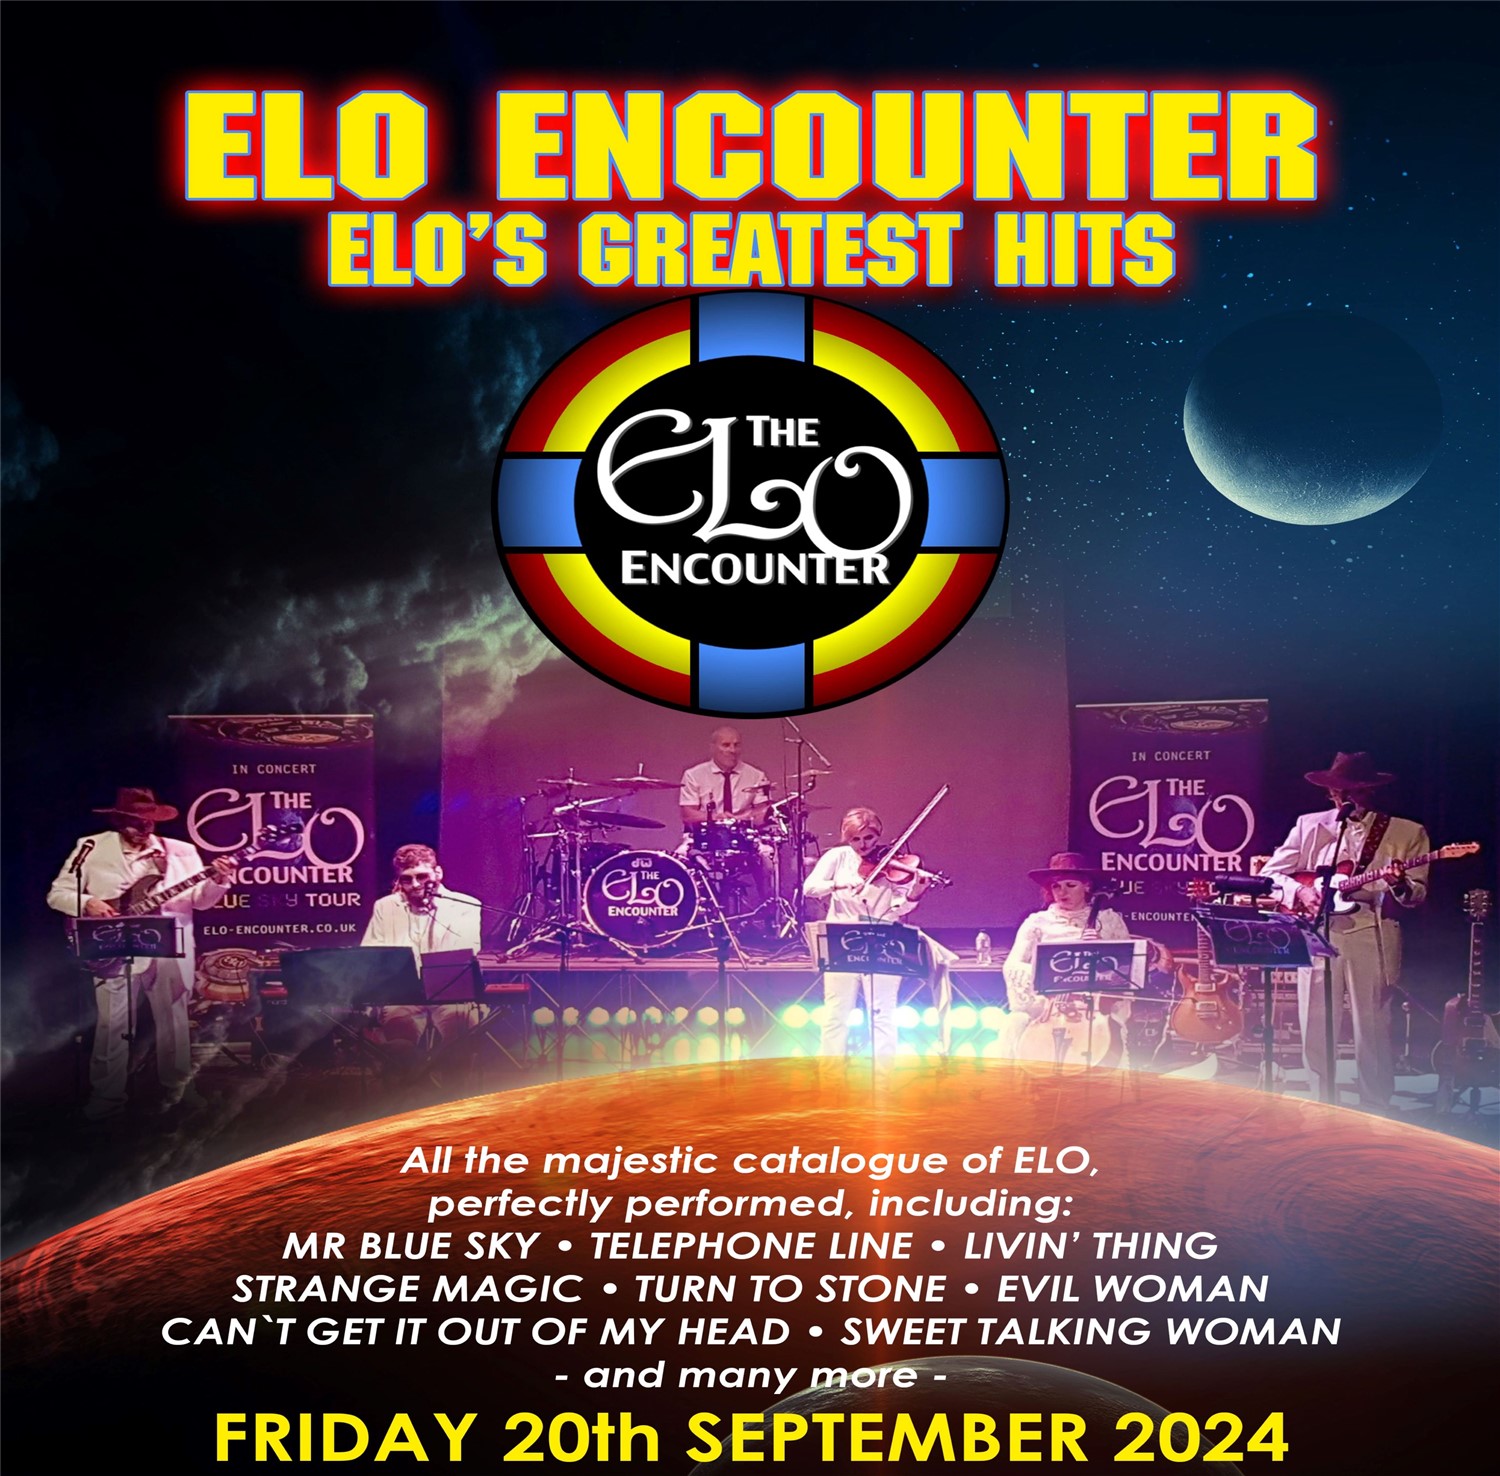 ELO Encounter ELOs Greatest Hits on sep. 20, 19:30@Standard capacity - Elegir asientoCompra entradas y obtén información enSutton Coldfield Town Hall 